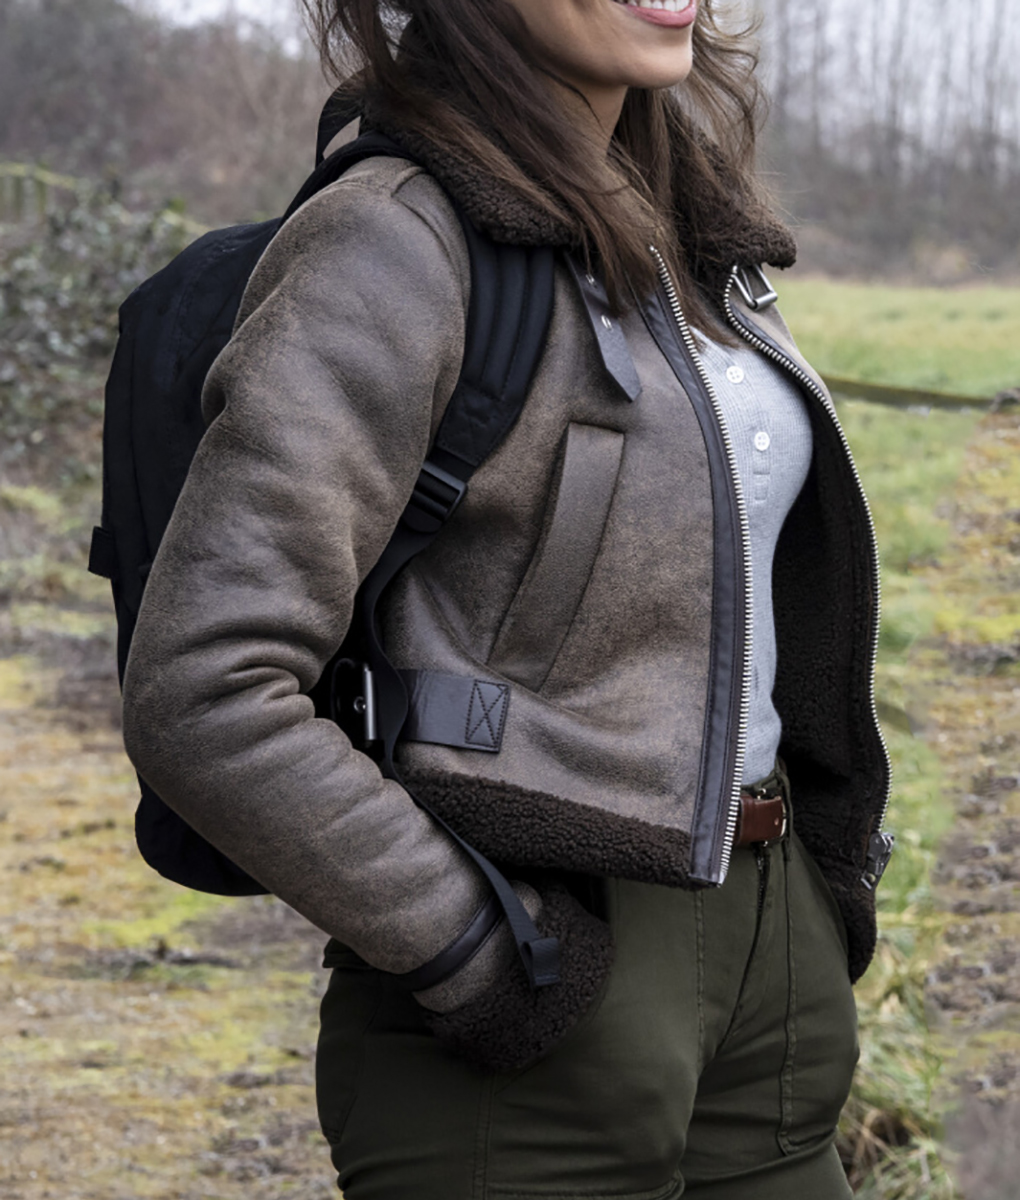 Sofia Pernas Tracker Shearling Aviator Jacket (7)